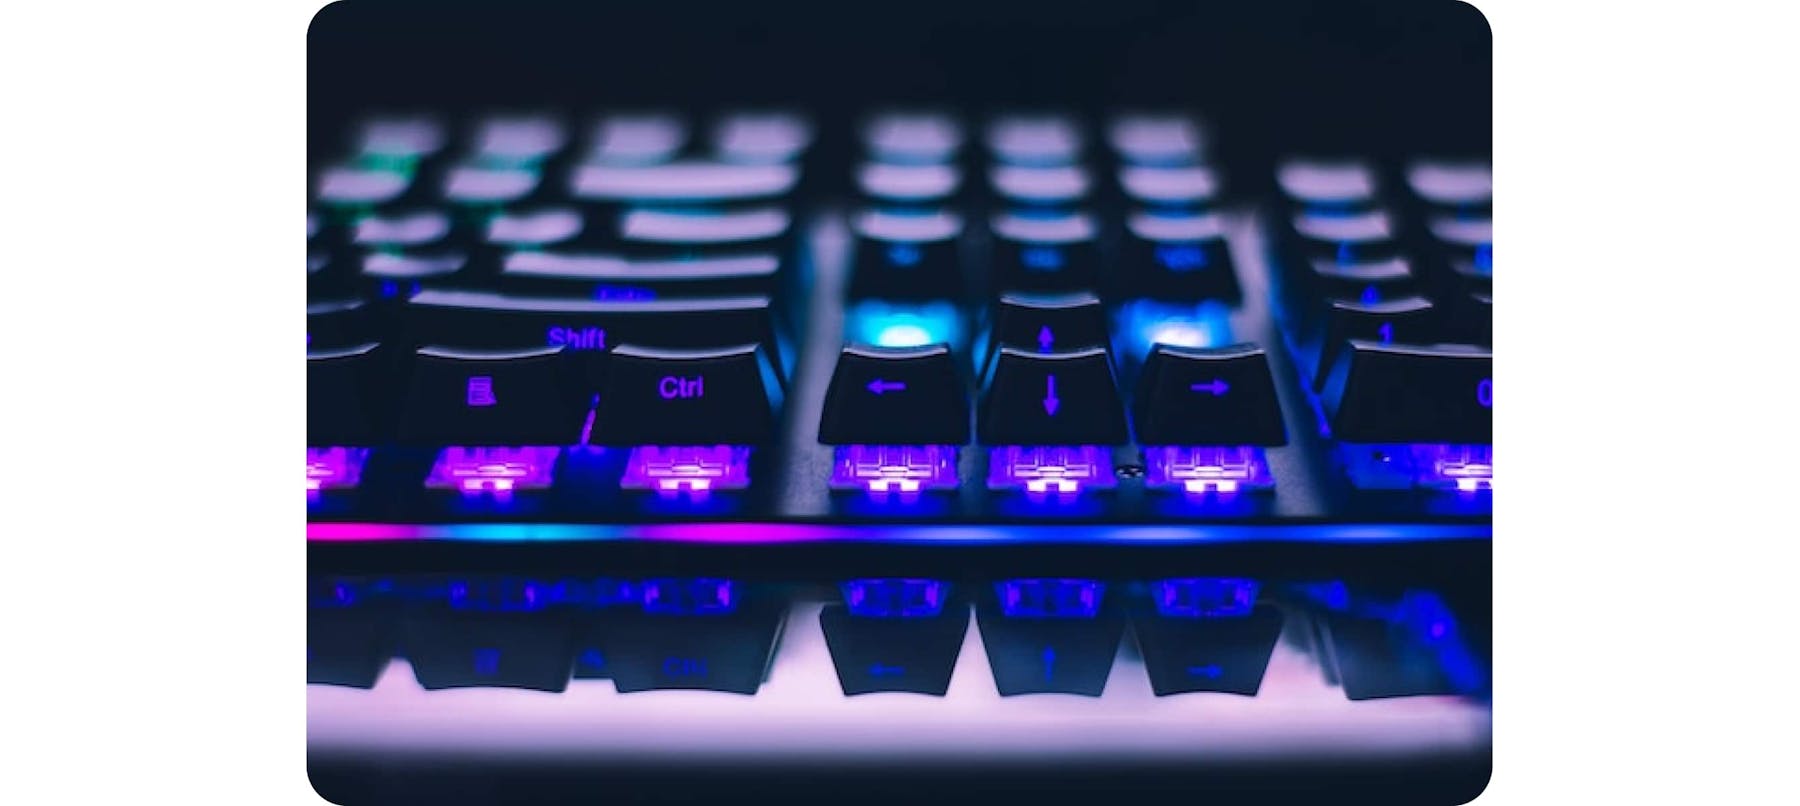 Blue keyboard